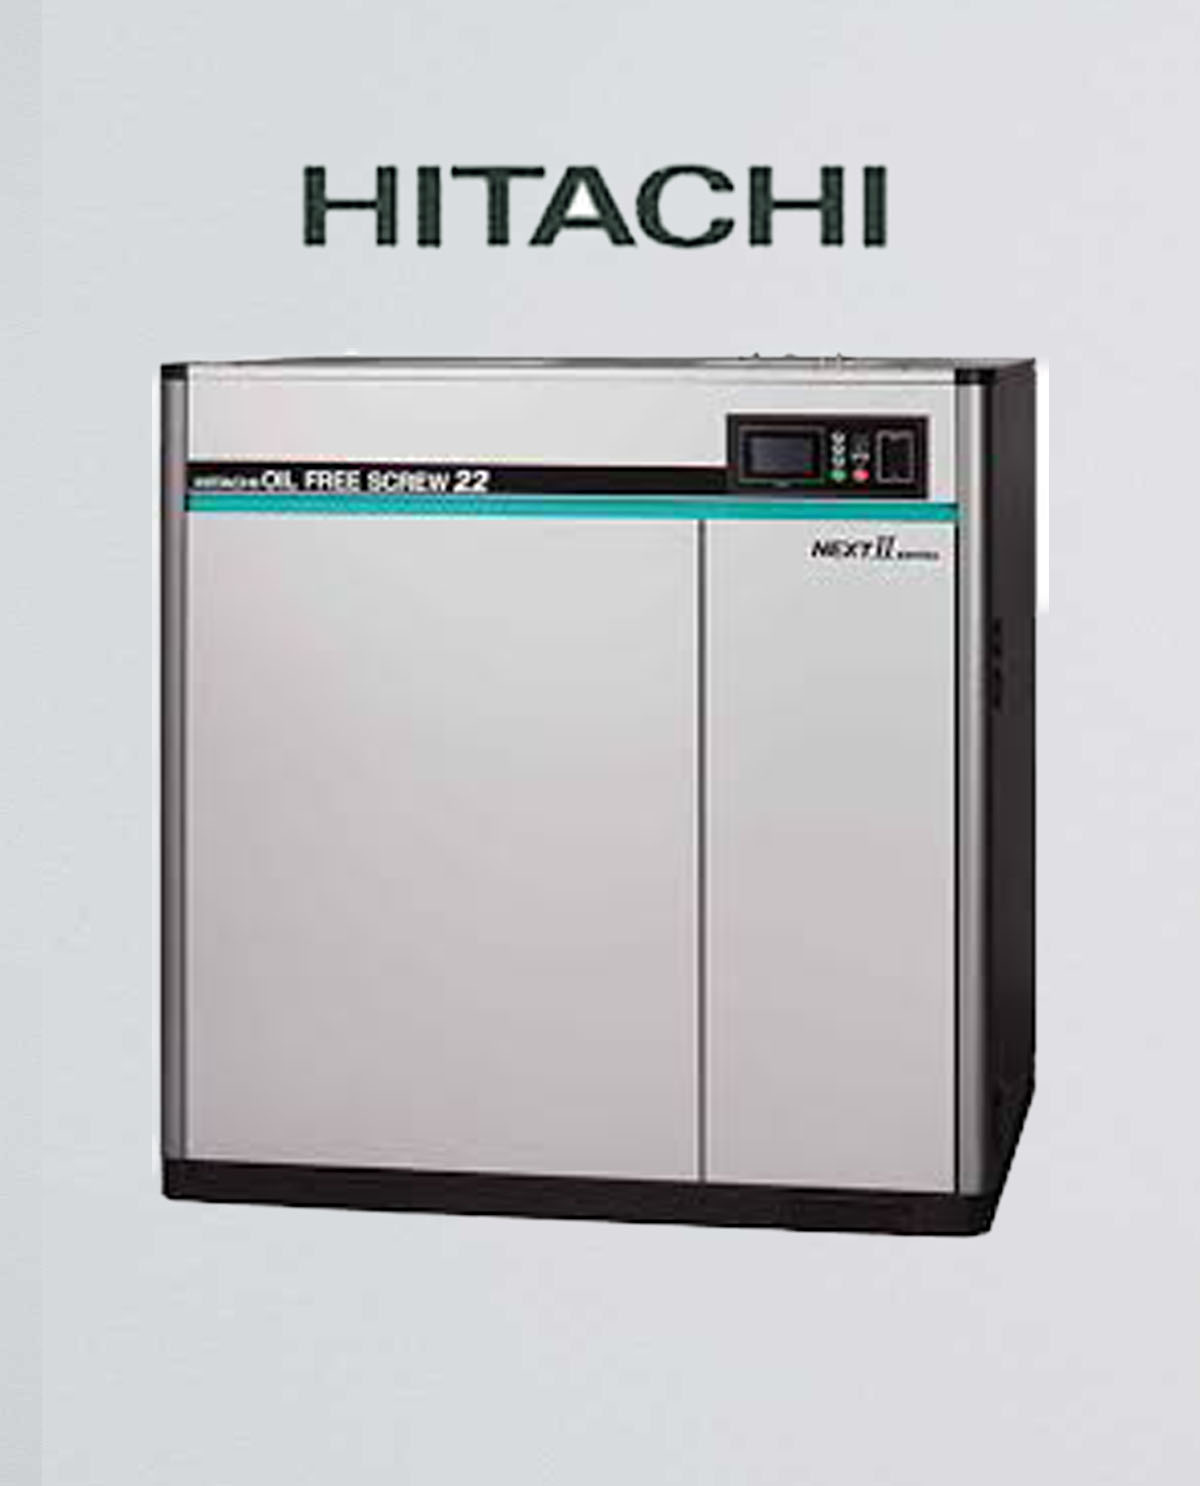 HITACHI OIL-FREE SCREW 